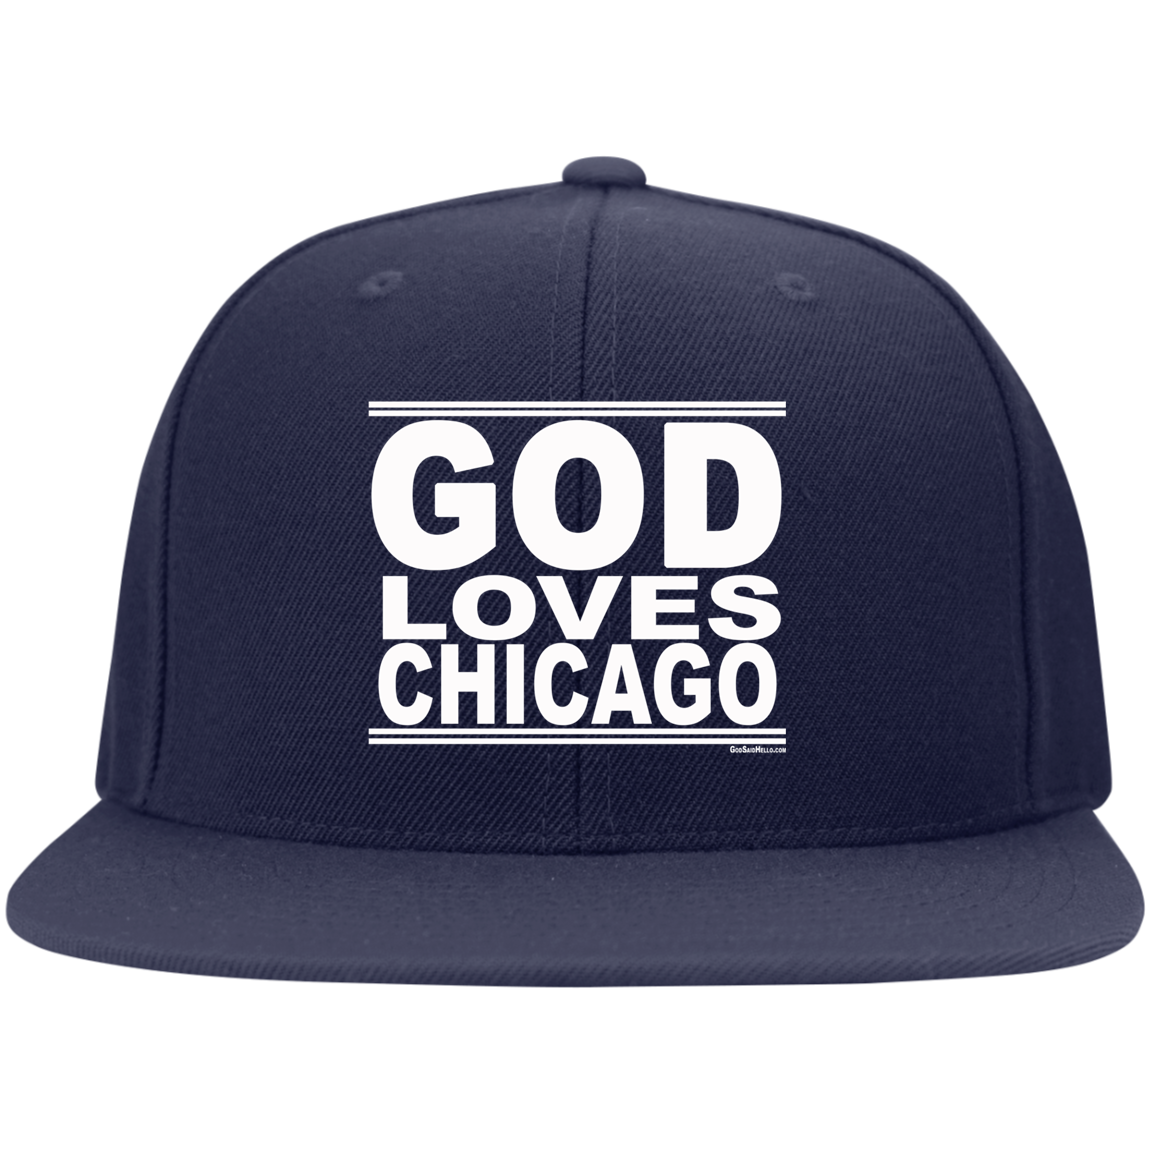 #GodLovesChicago - Snapback Hat